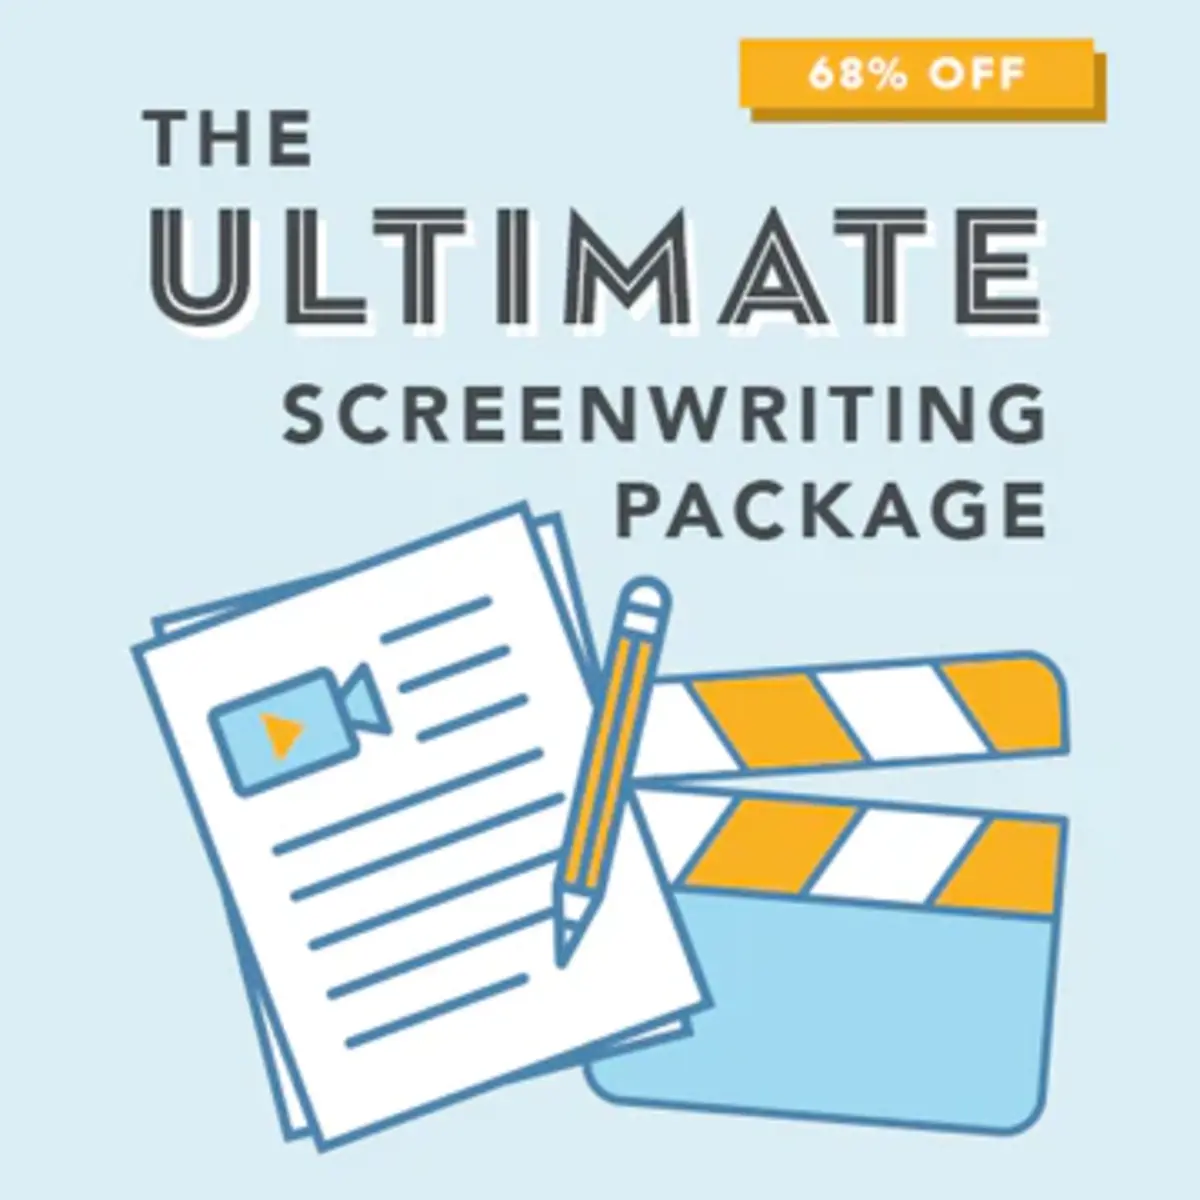 TWS-2021-UltimateScreenwritingPackage-500x500_2_360x